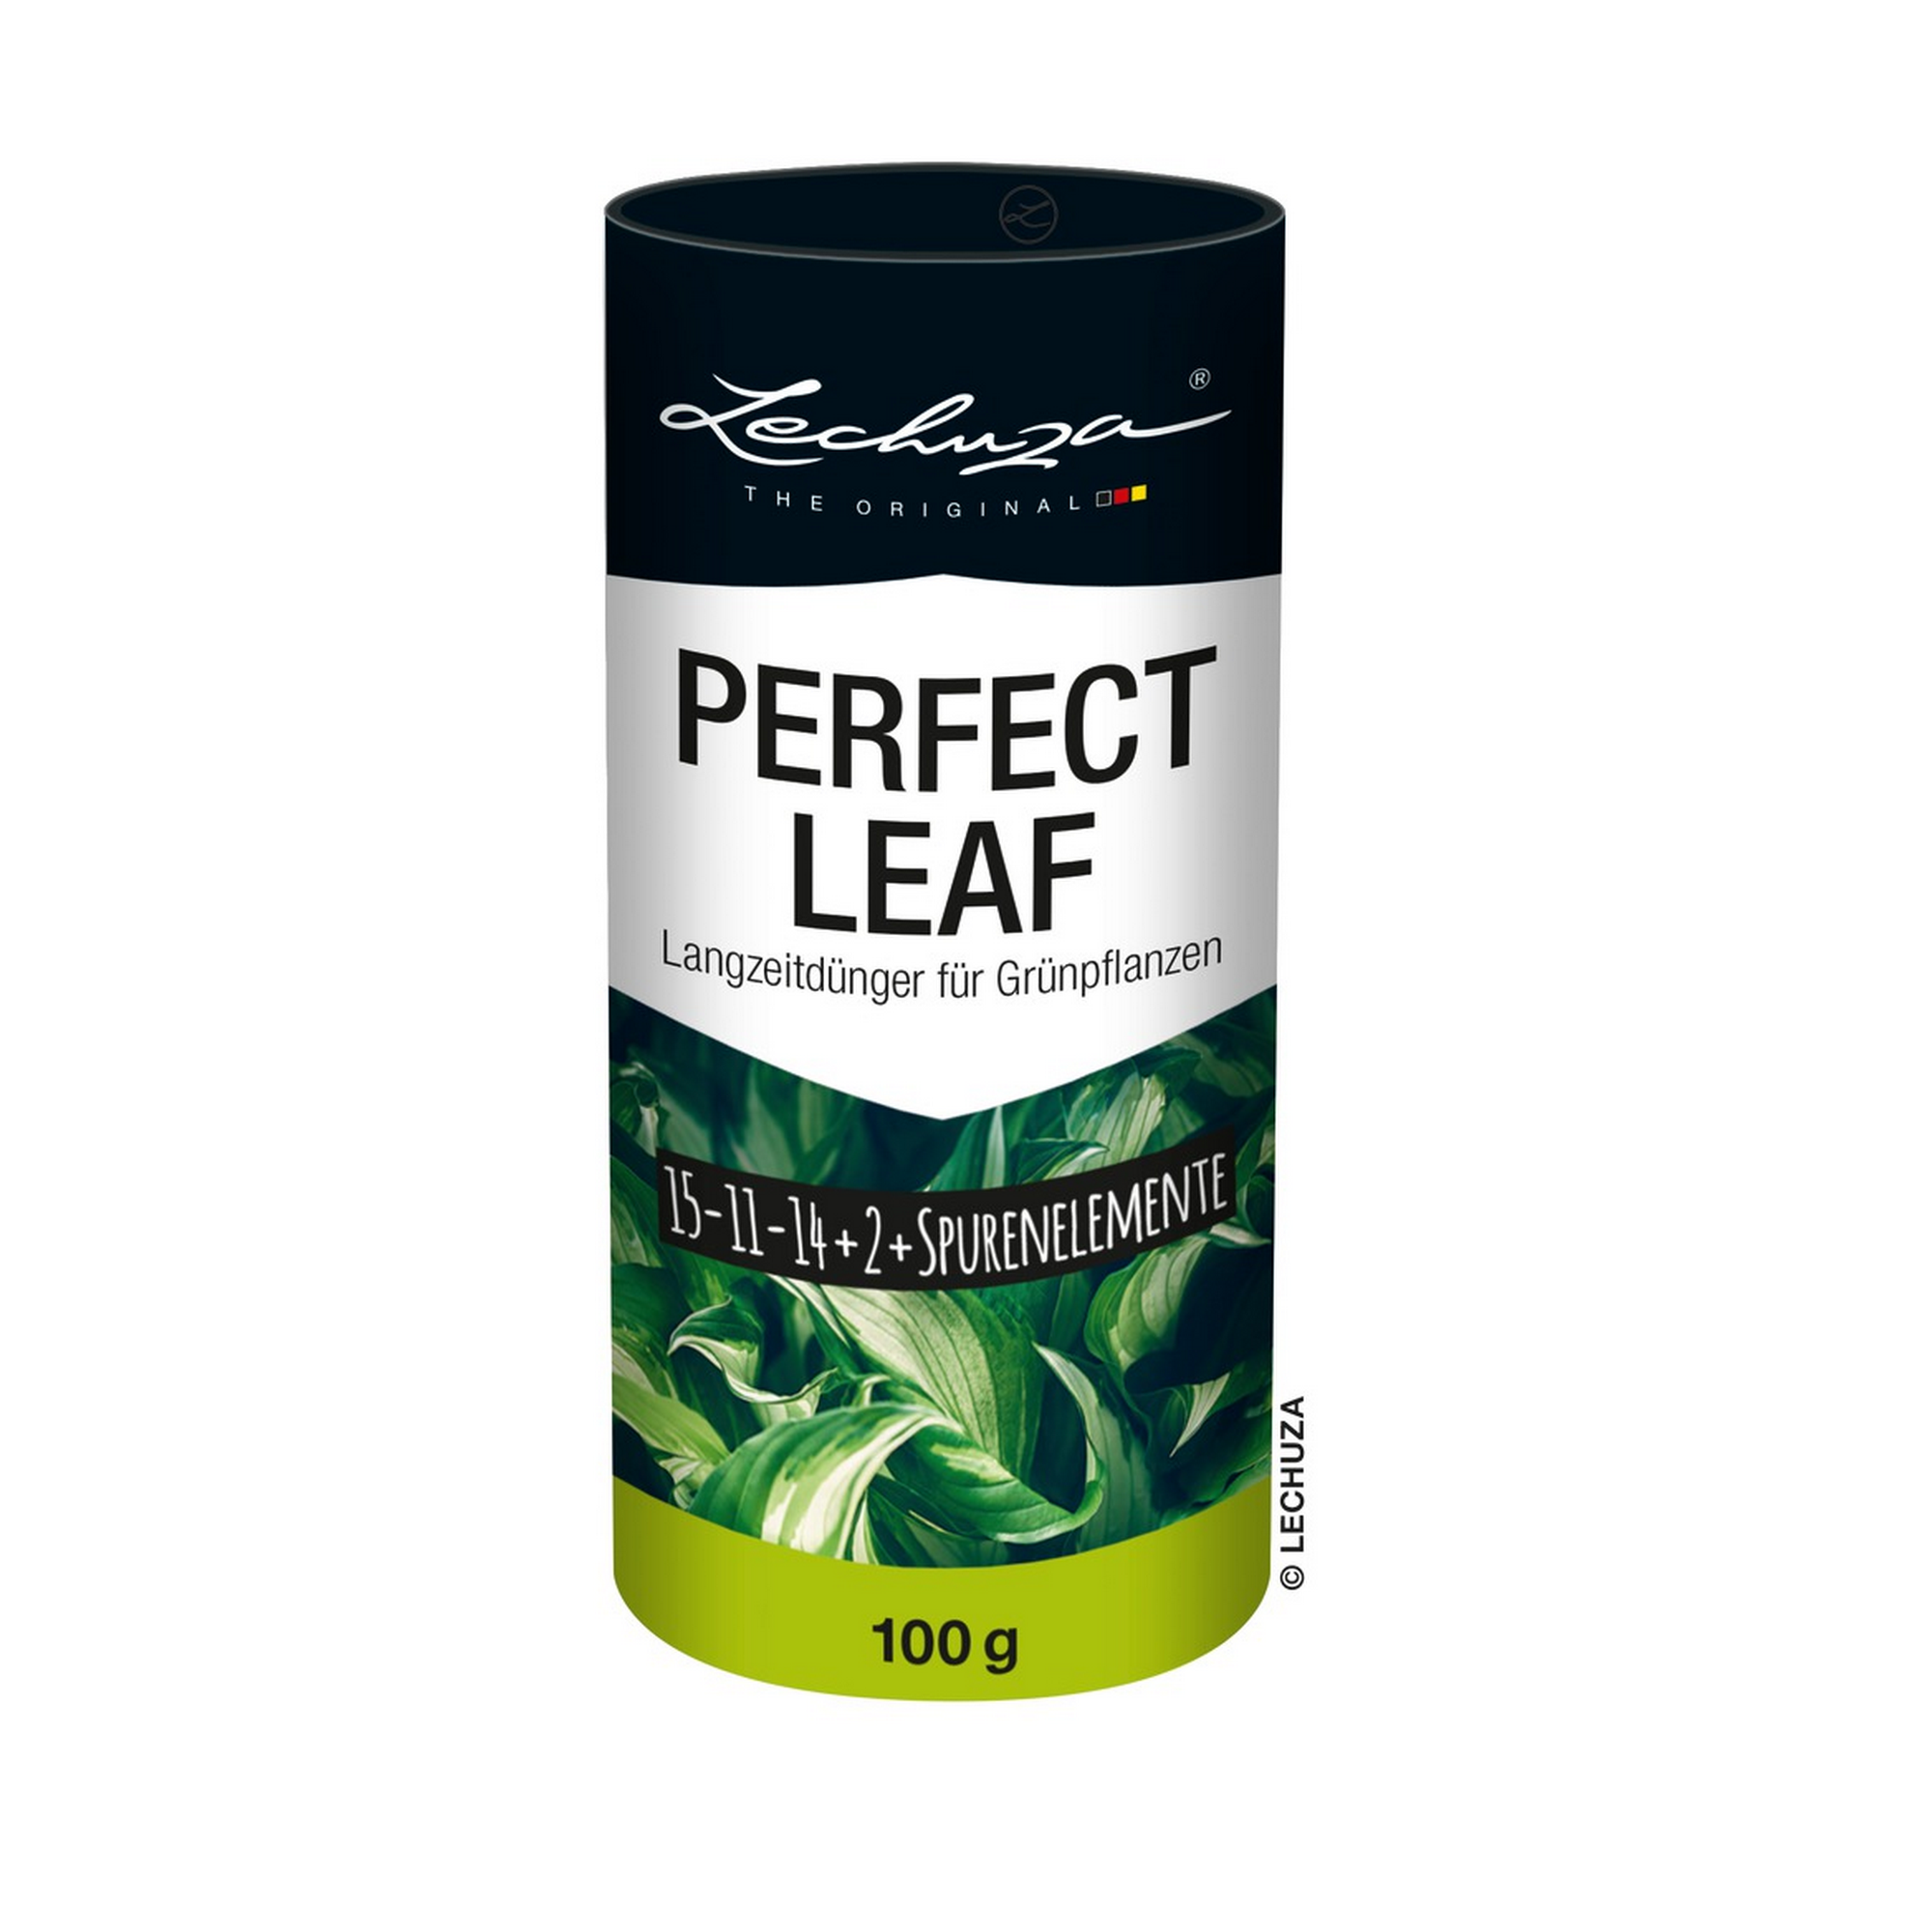 Langzeitdünger für Grünpflanzen 'Perfect Leaf' 100 g + product picture